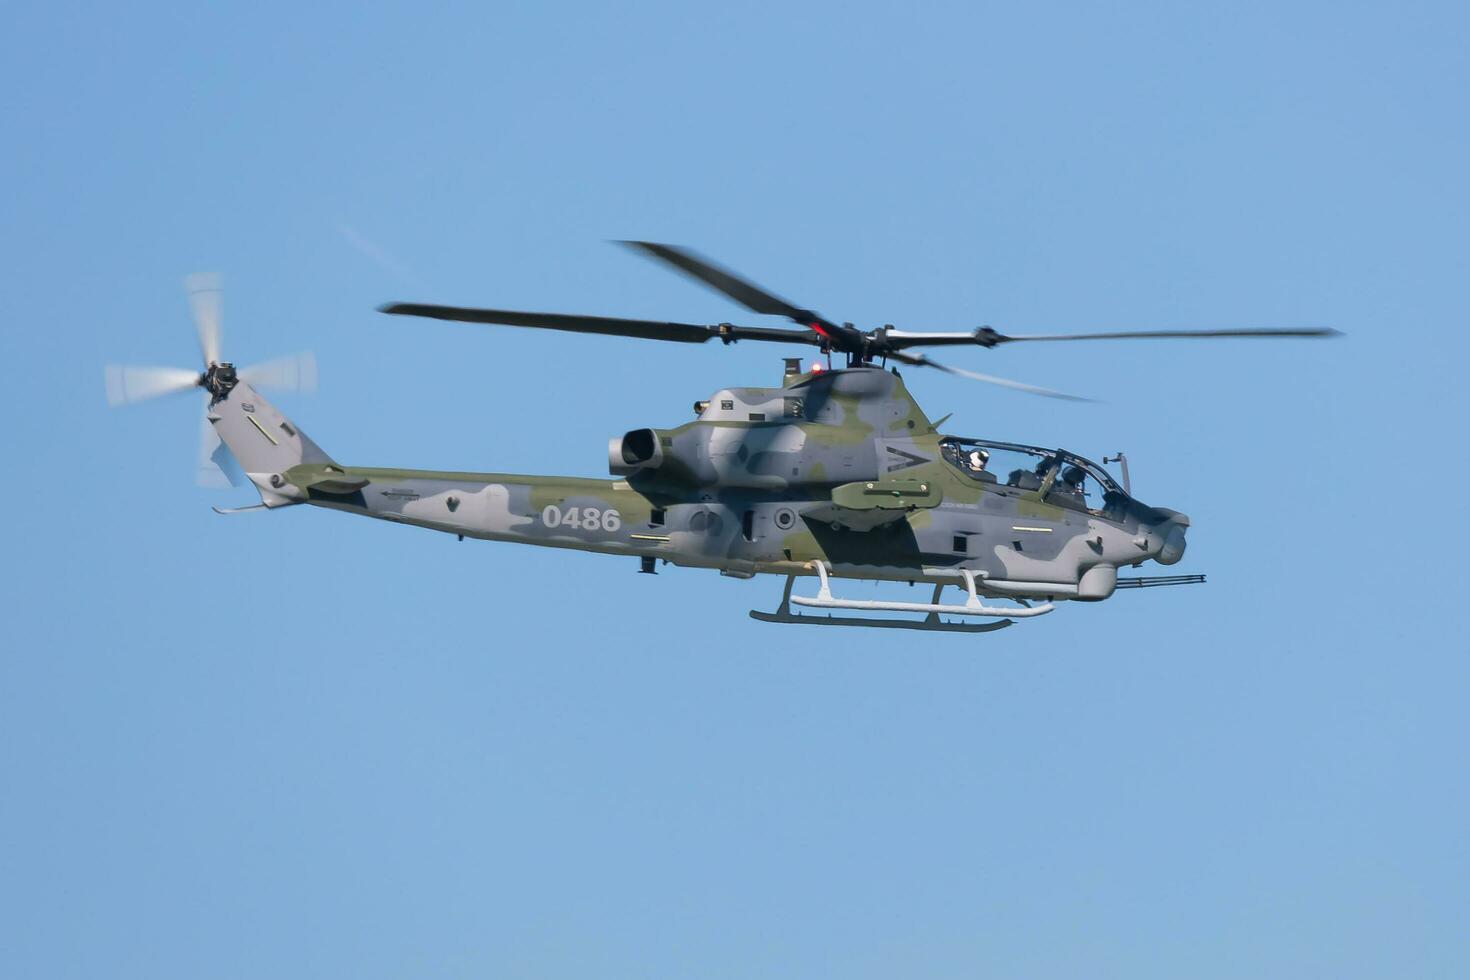 ceco aria vigore campana ah-1z vipera attacco elicottero. aviazione e militare elicotteri. foto